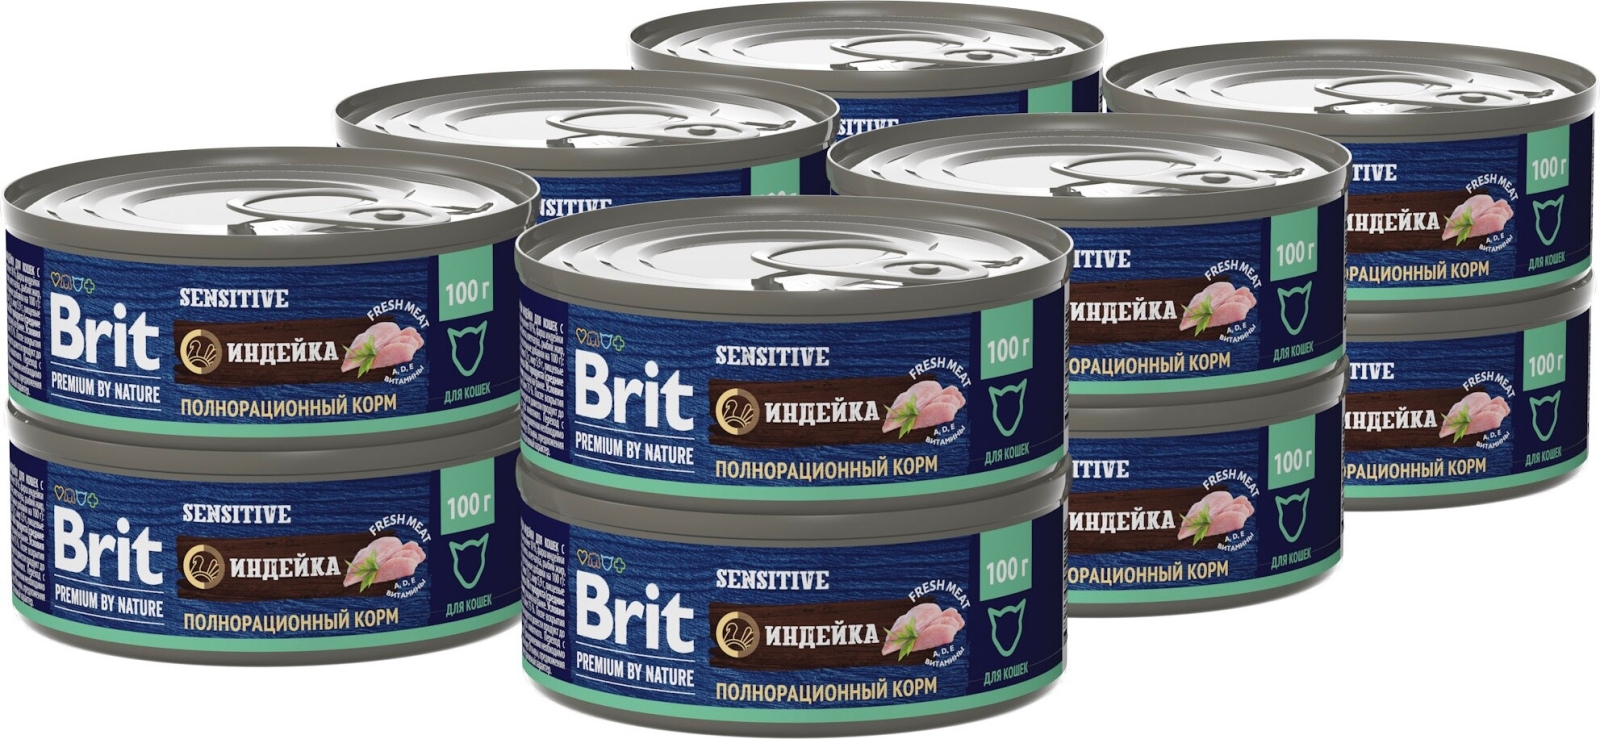 Влажный корм для кошек BRIT Premium by Nature Sensitive индейка консервы 100 г (5051250) - Фото 2